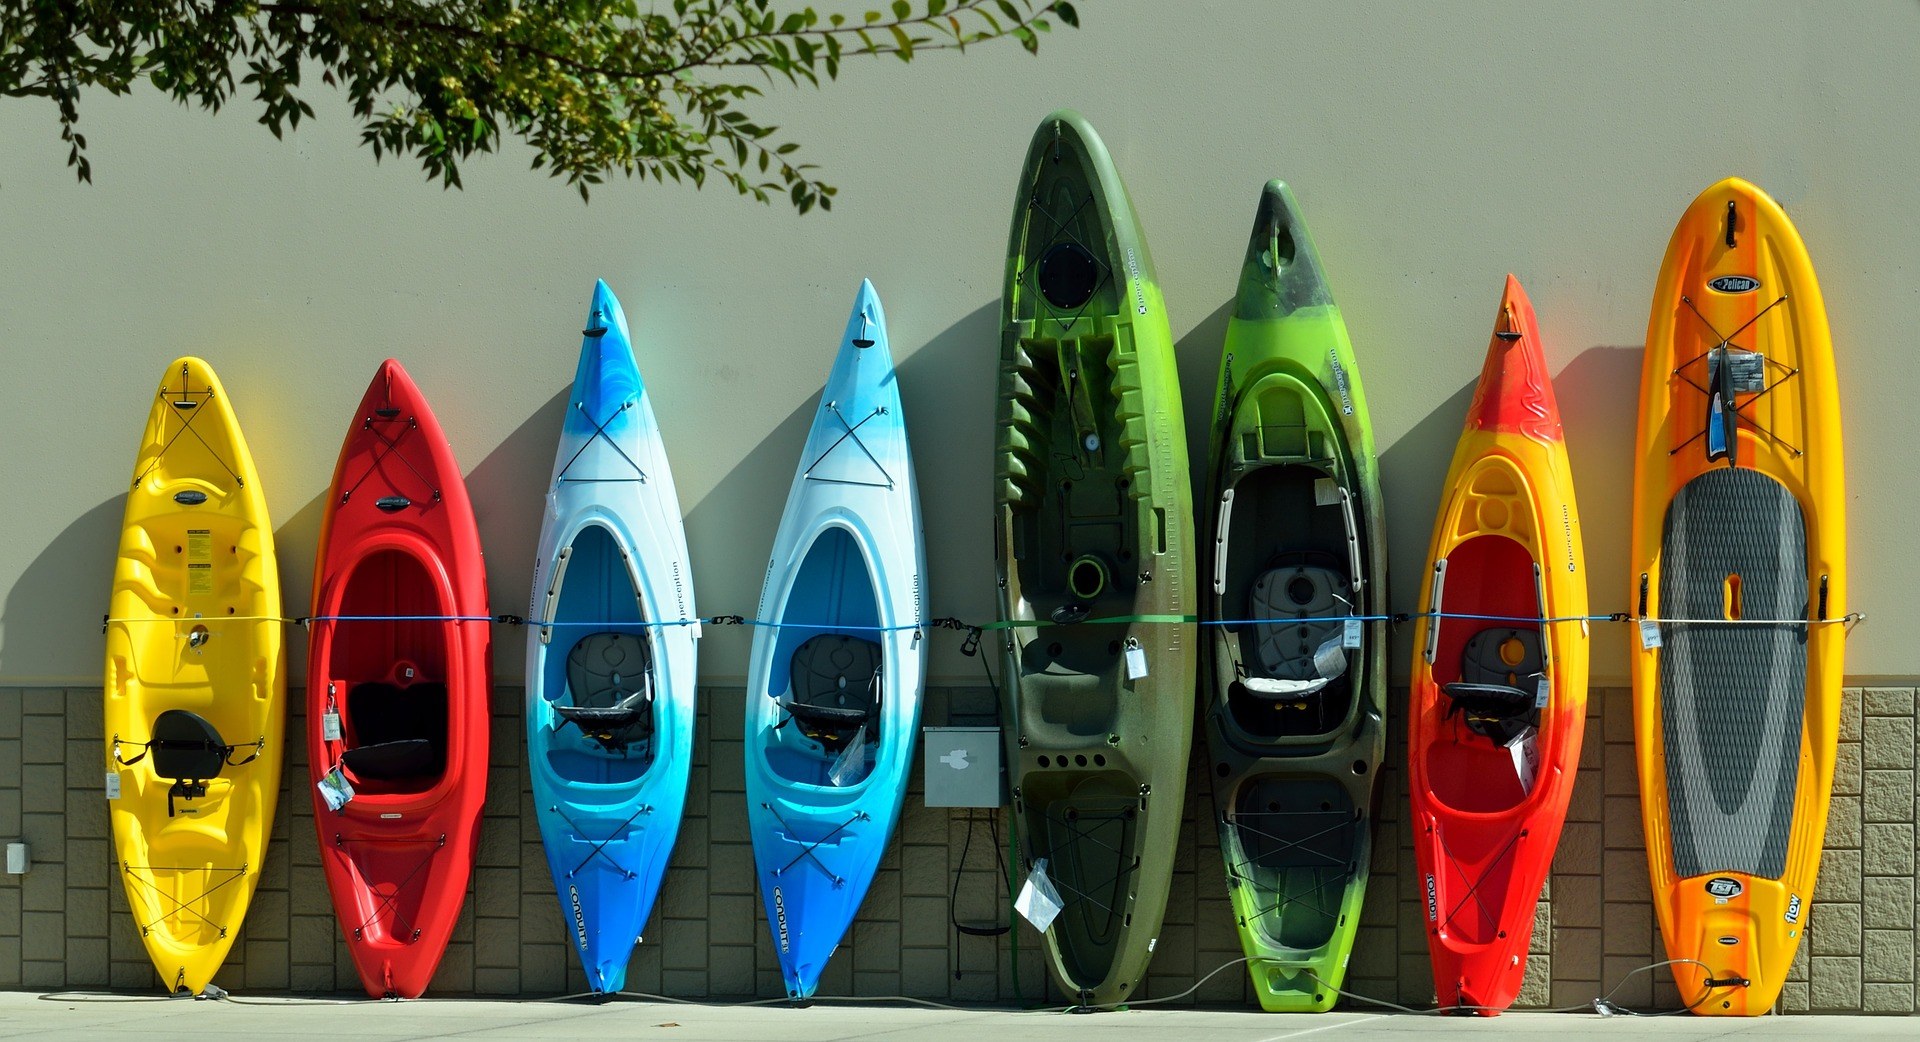 How To Choose A Kayak?